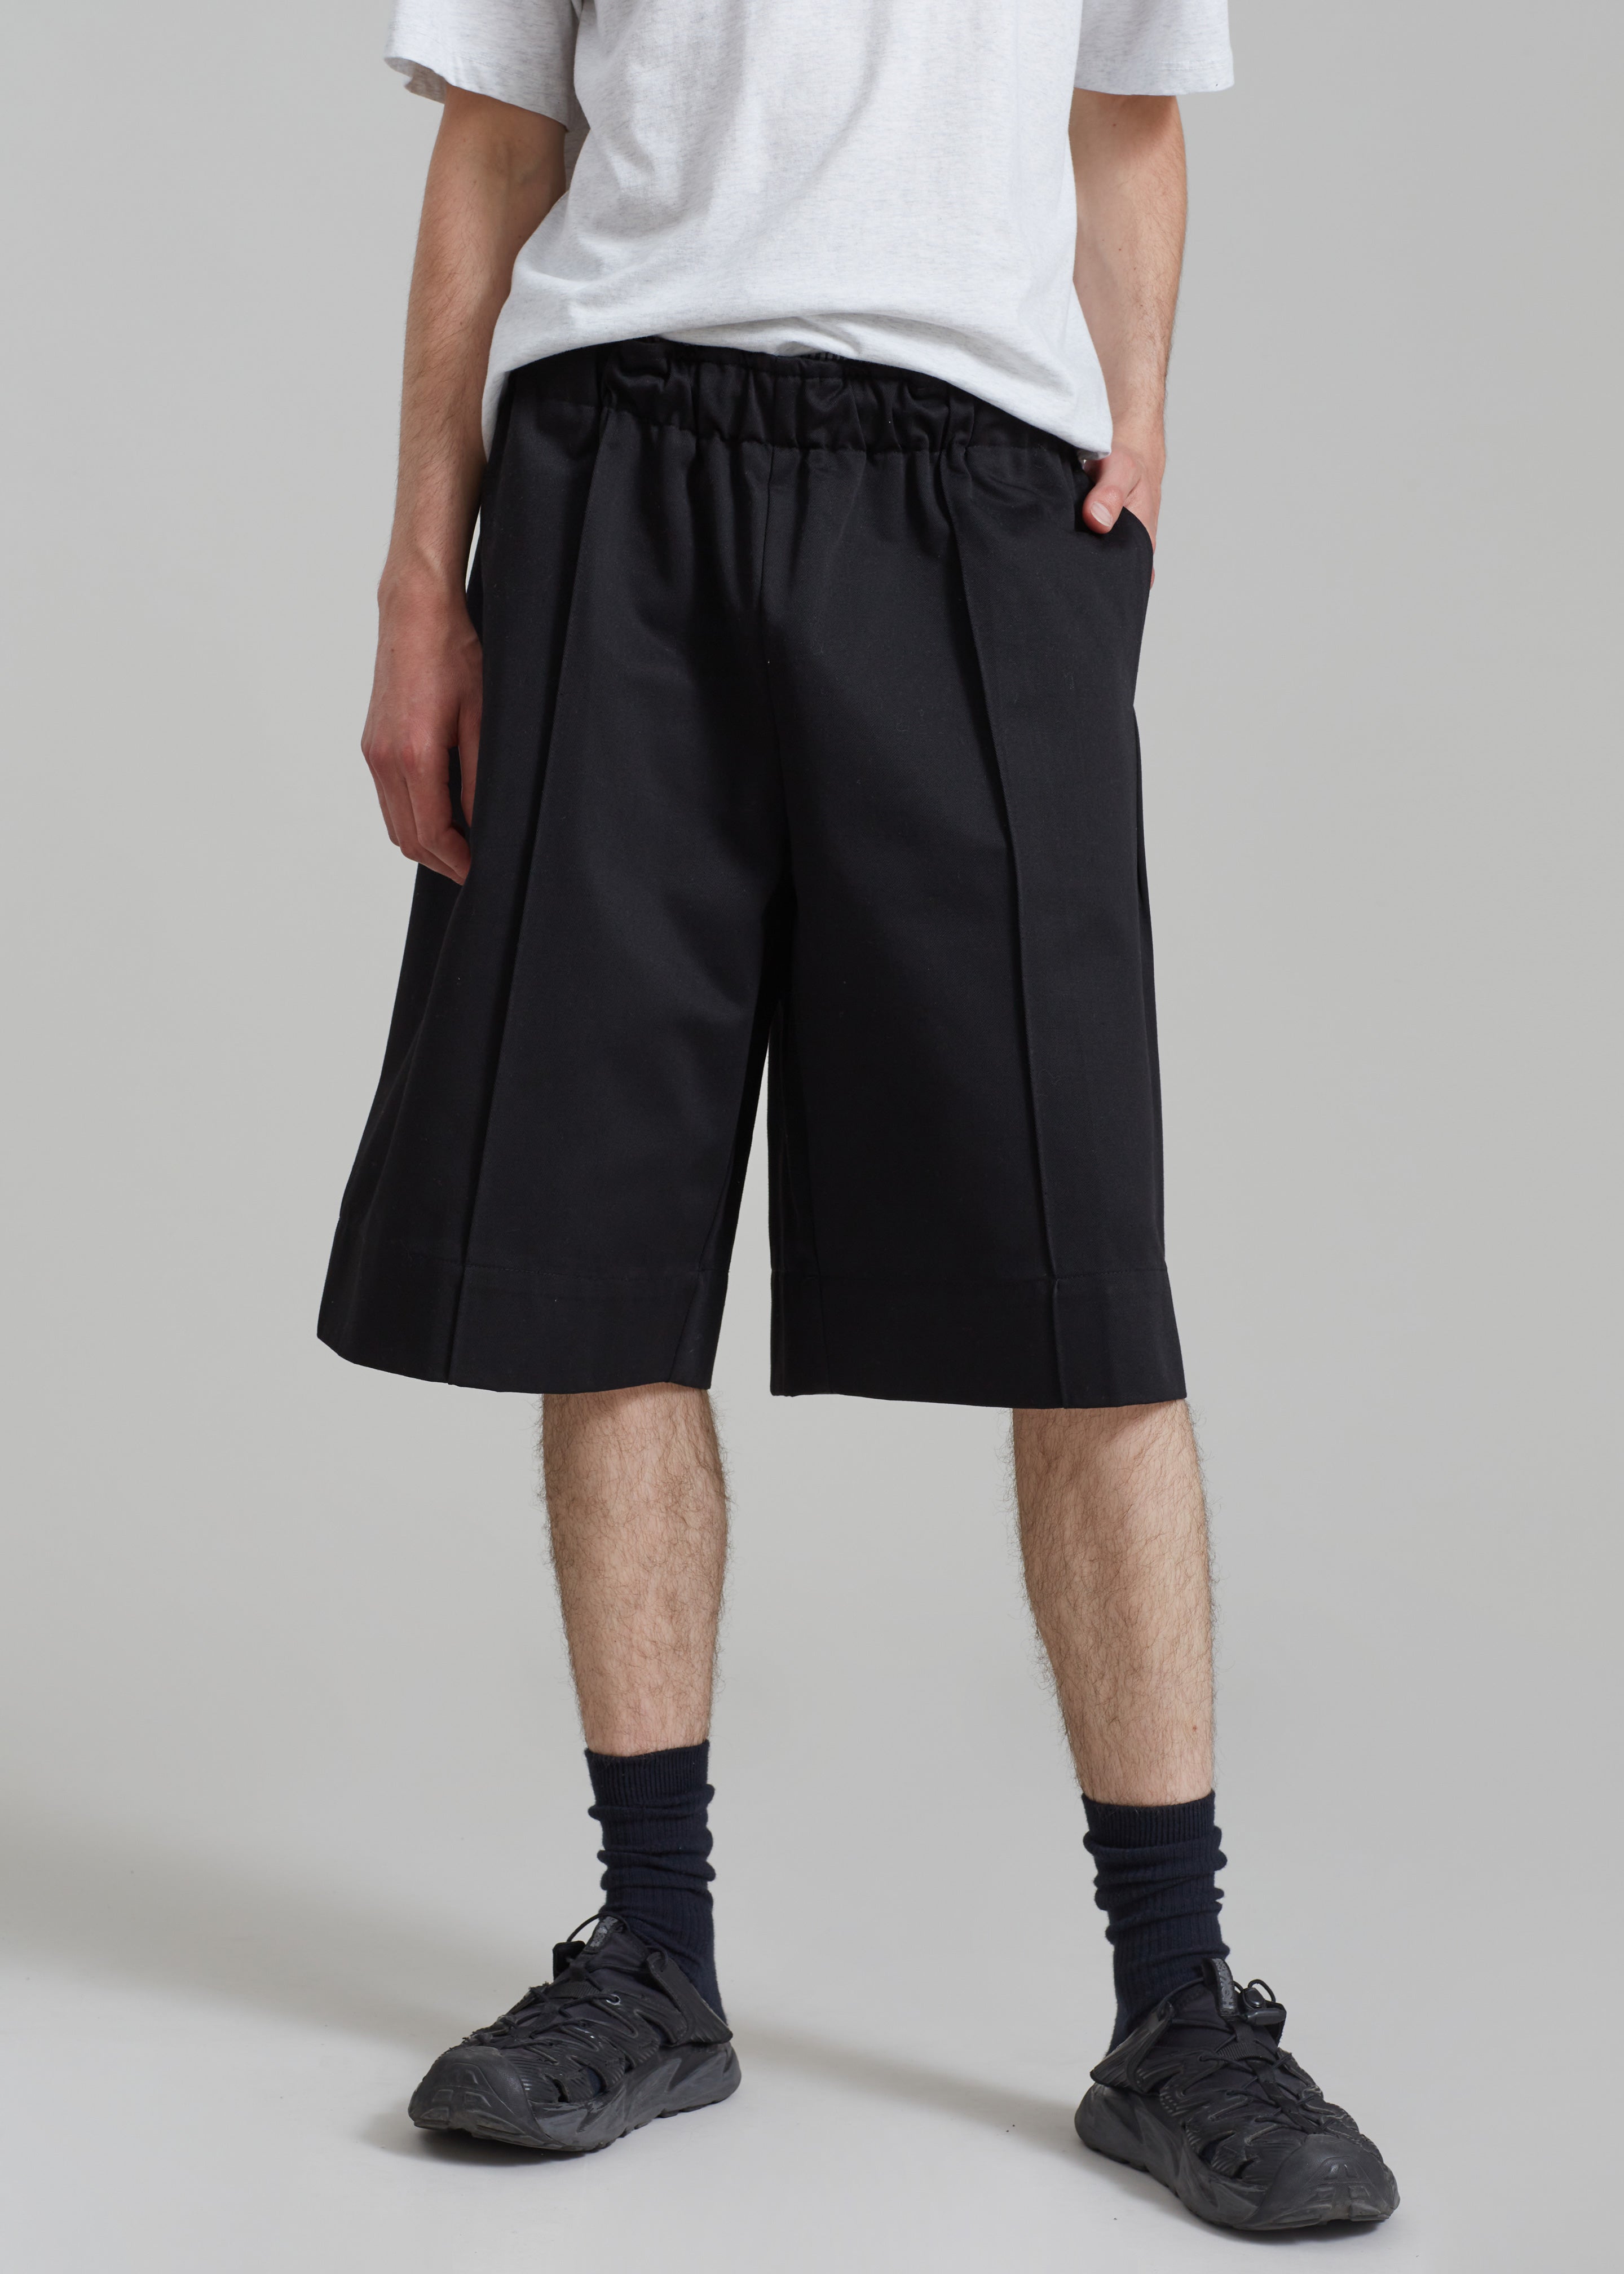 Adan Bermuda Shorts - Black - 2